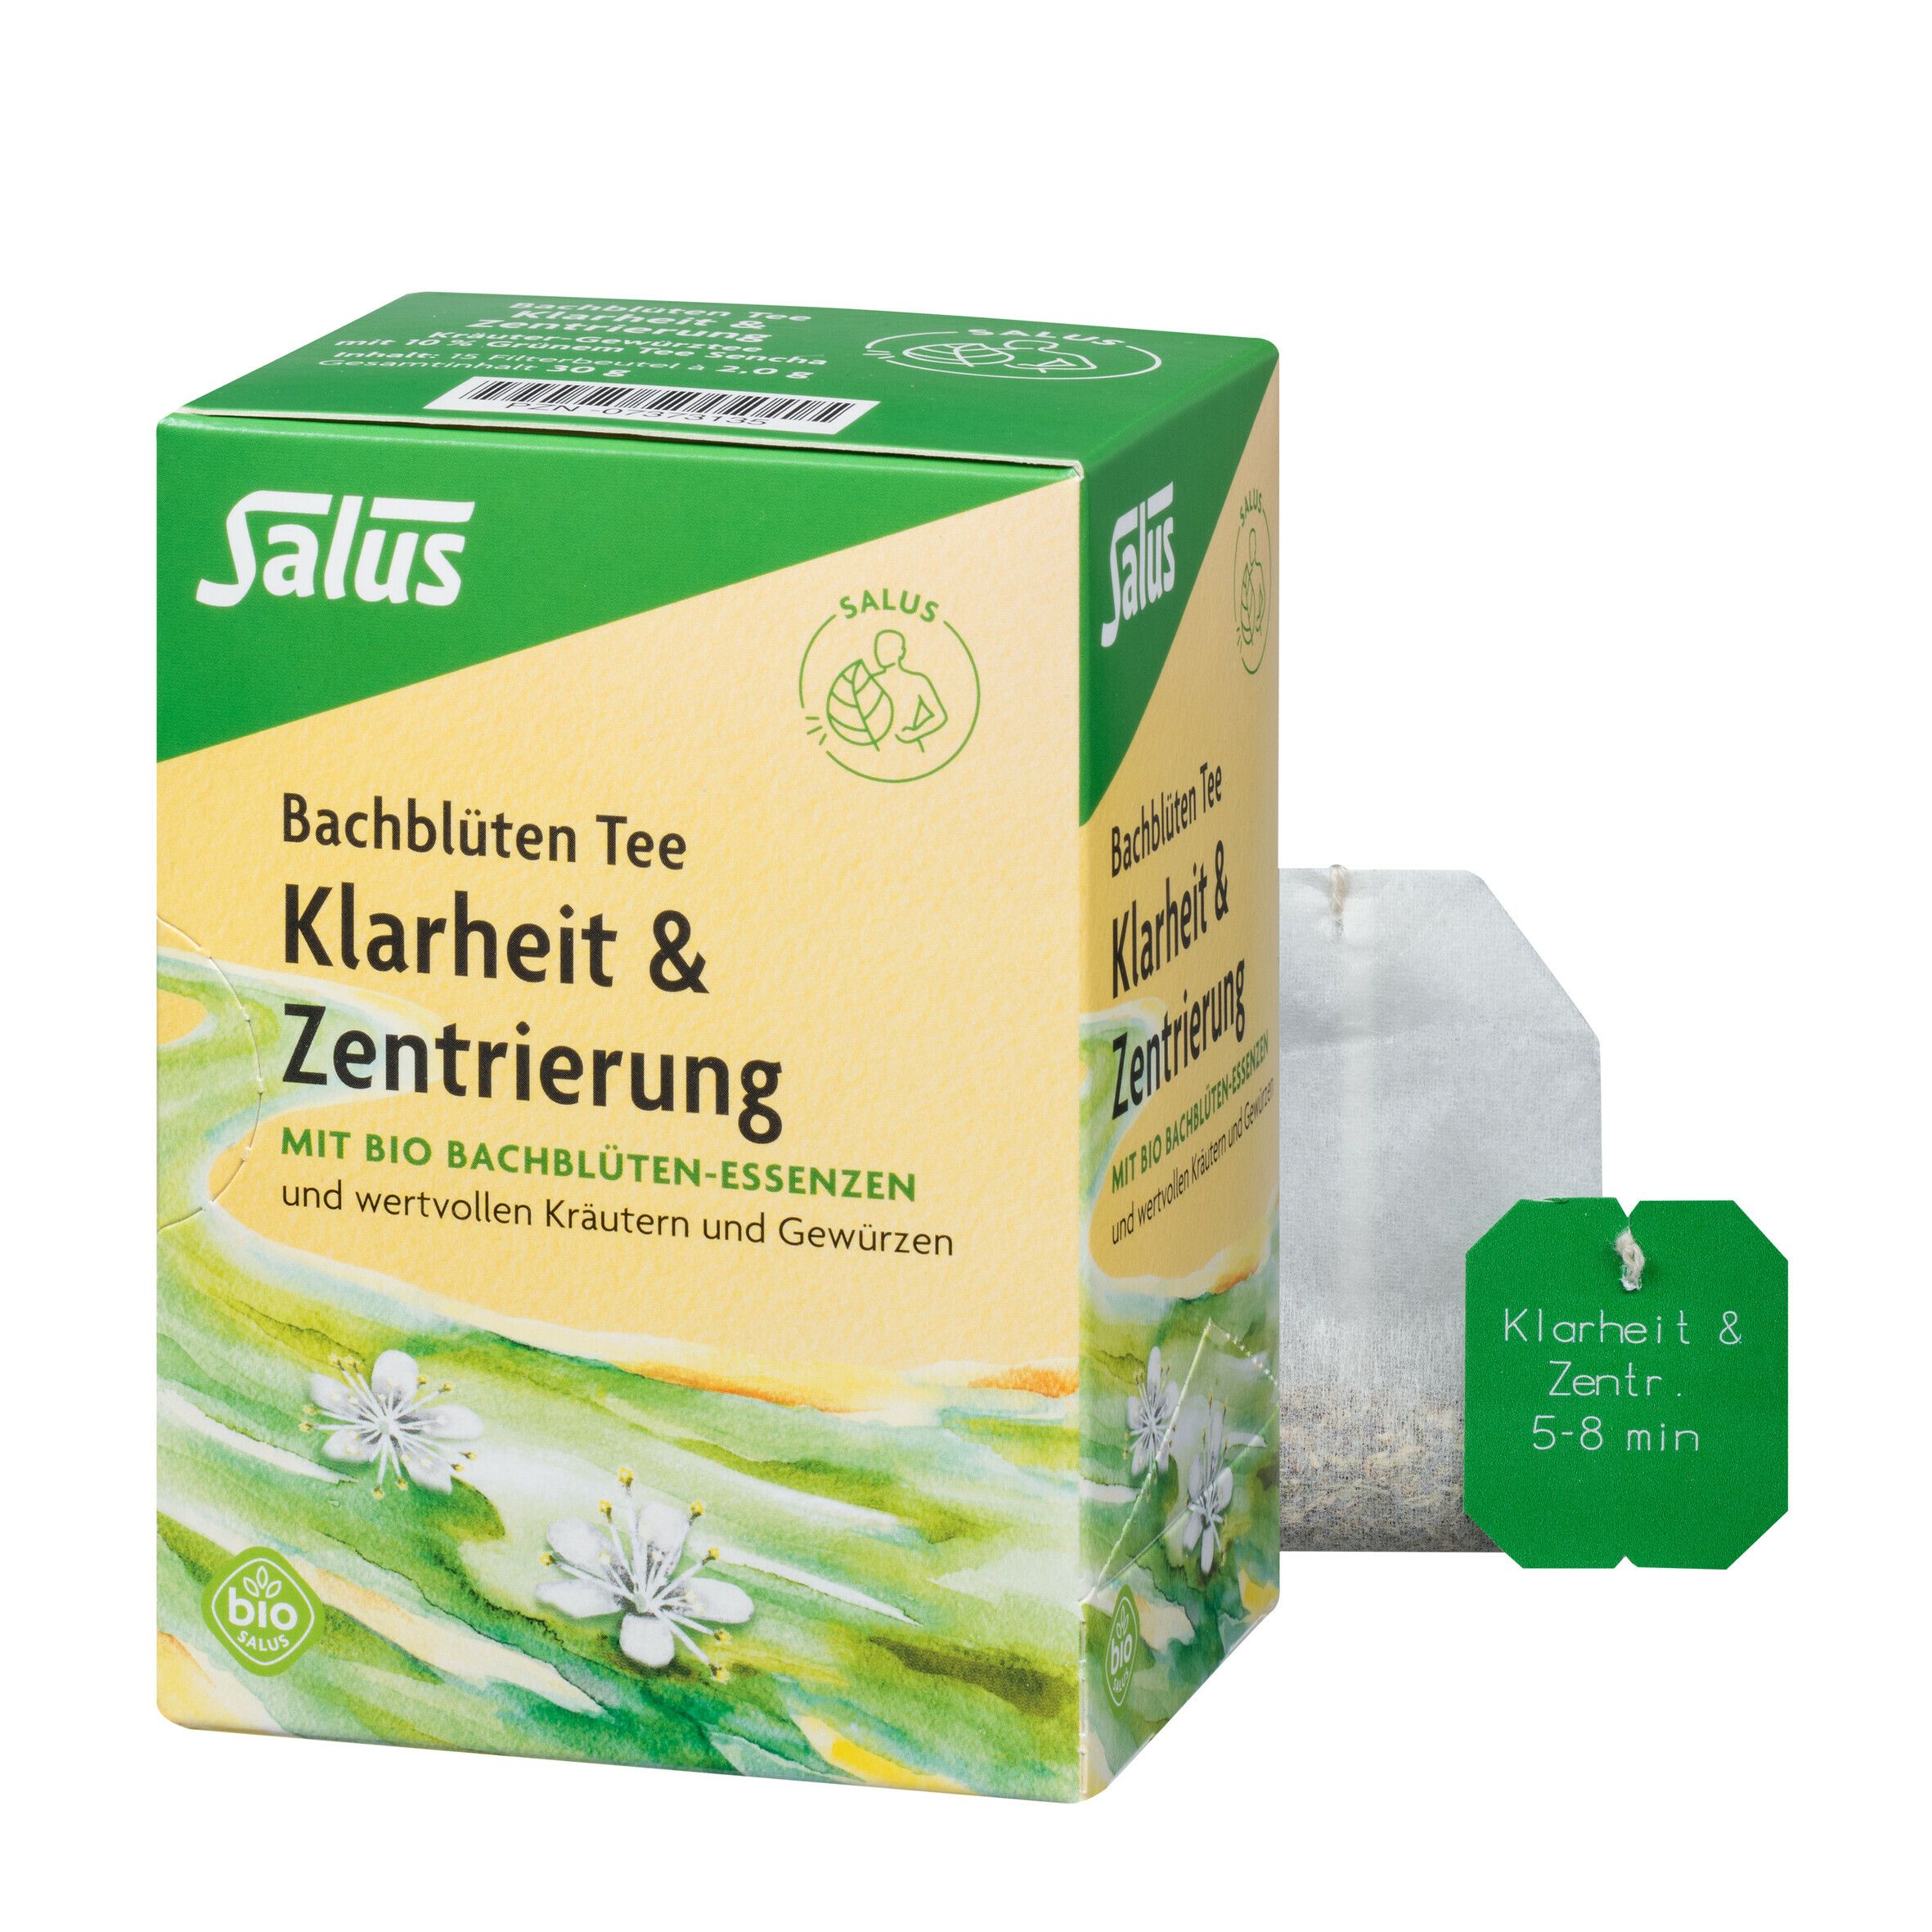 Salus® Bachblüten Tee Klarheit & Zentrierung